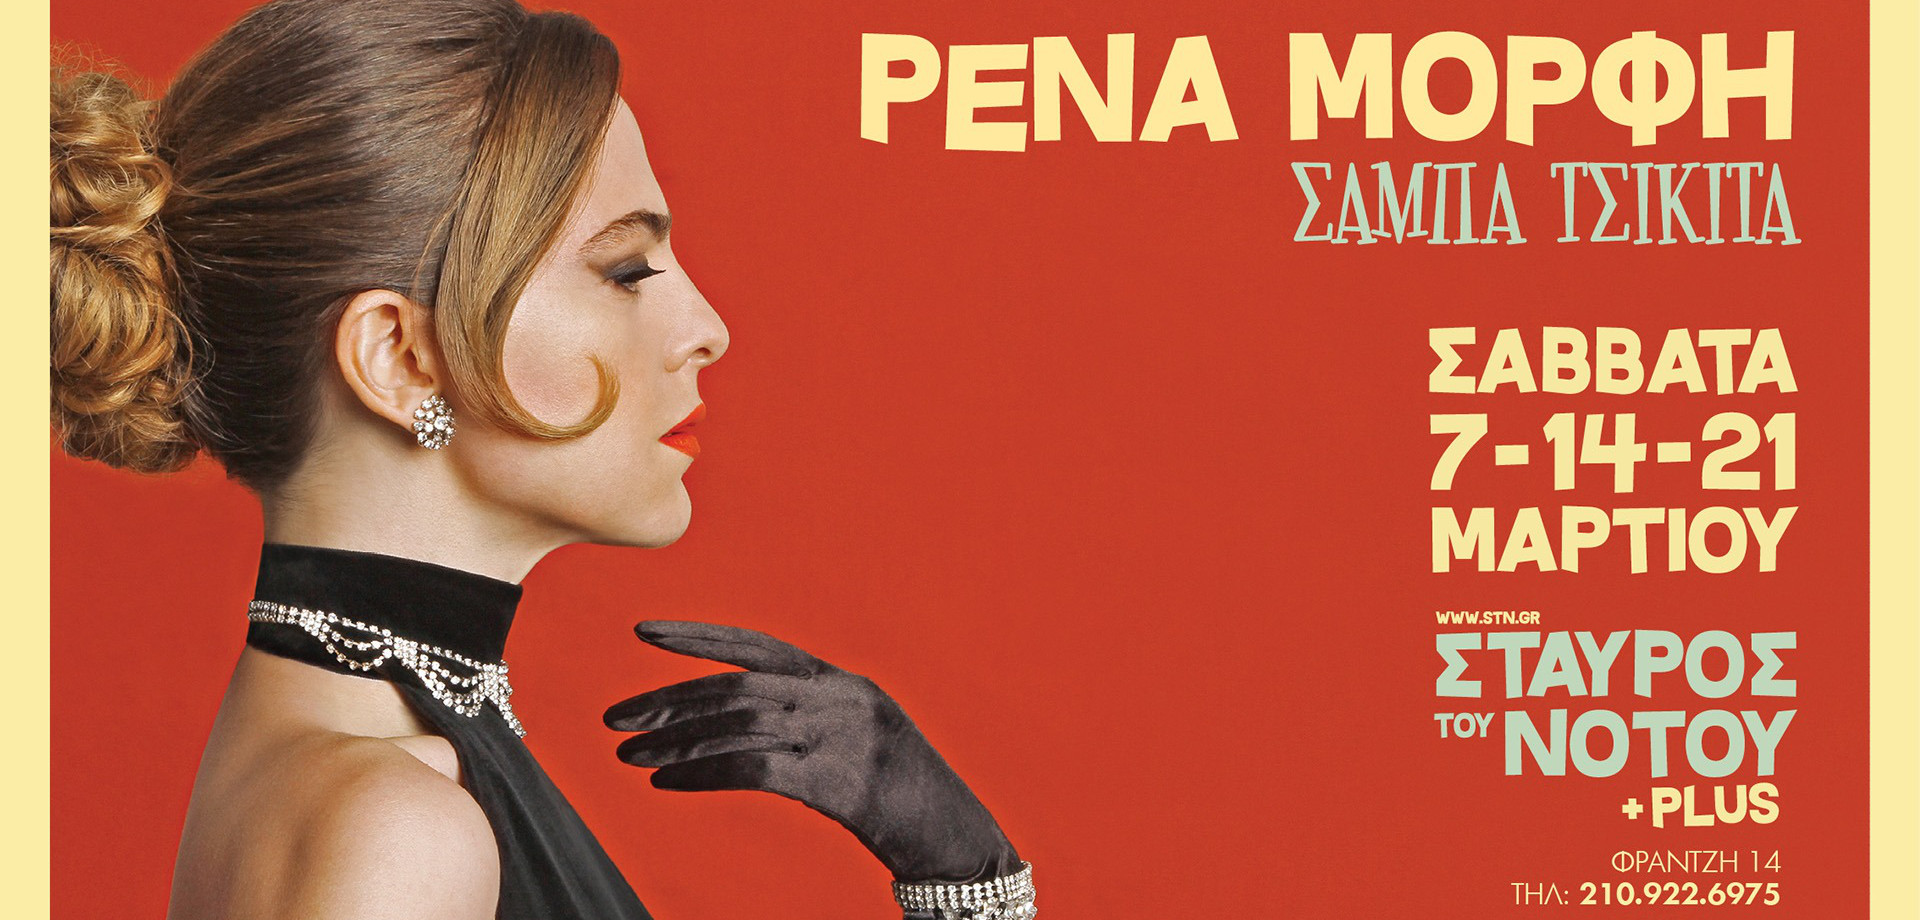 Η Ρένα Μόρφη παρουσιάζει το νέο της δίσκο «ΣΑΜΠΑ ΤΣΙΚΙΤΑ» στον Σταυρό του Νότου plus